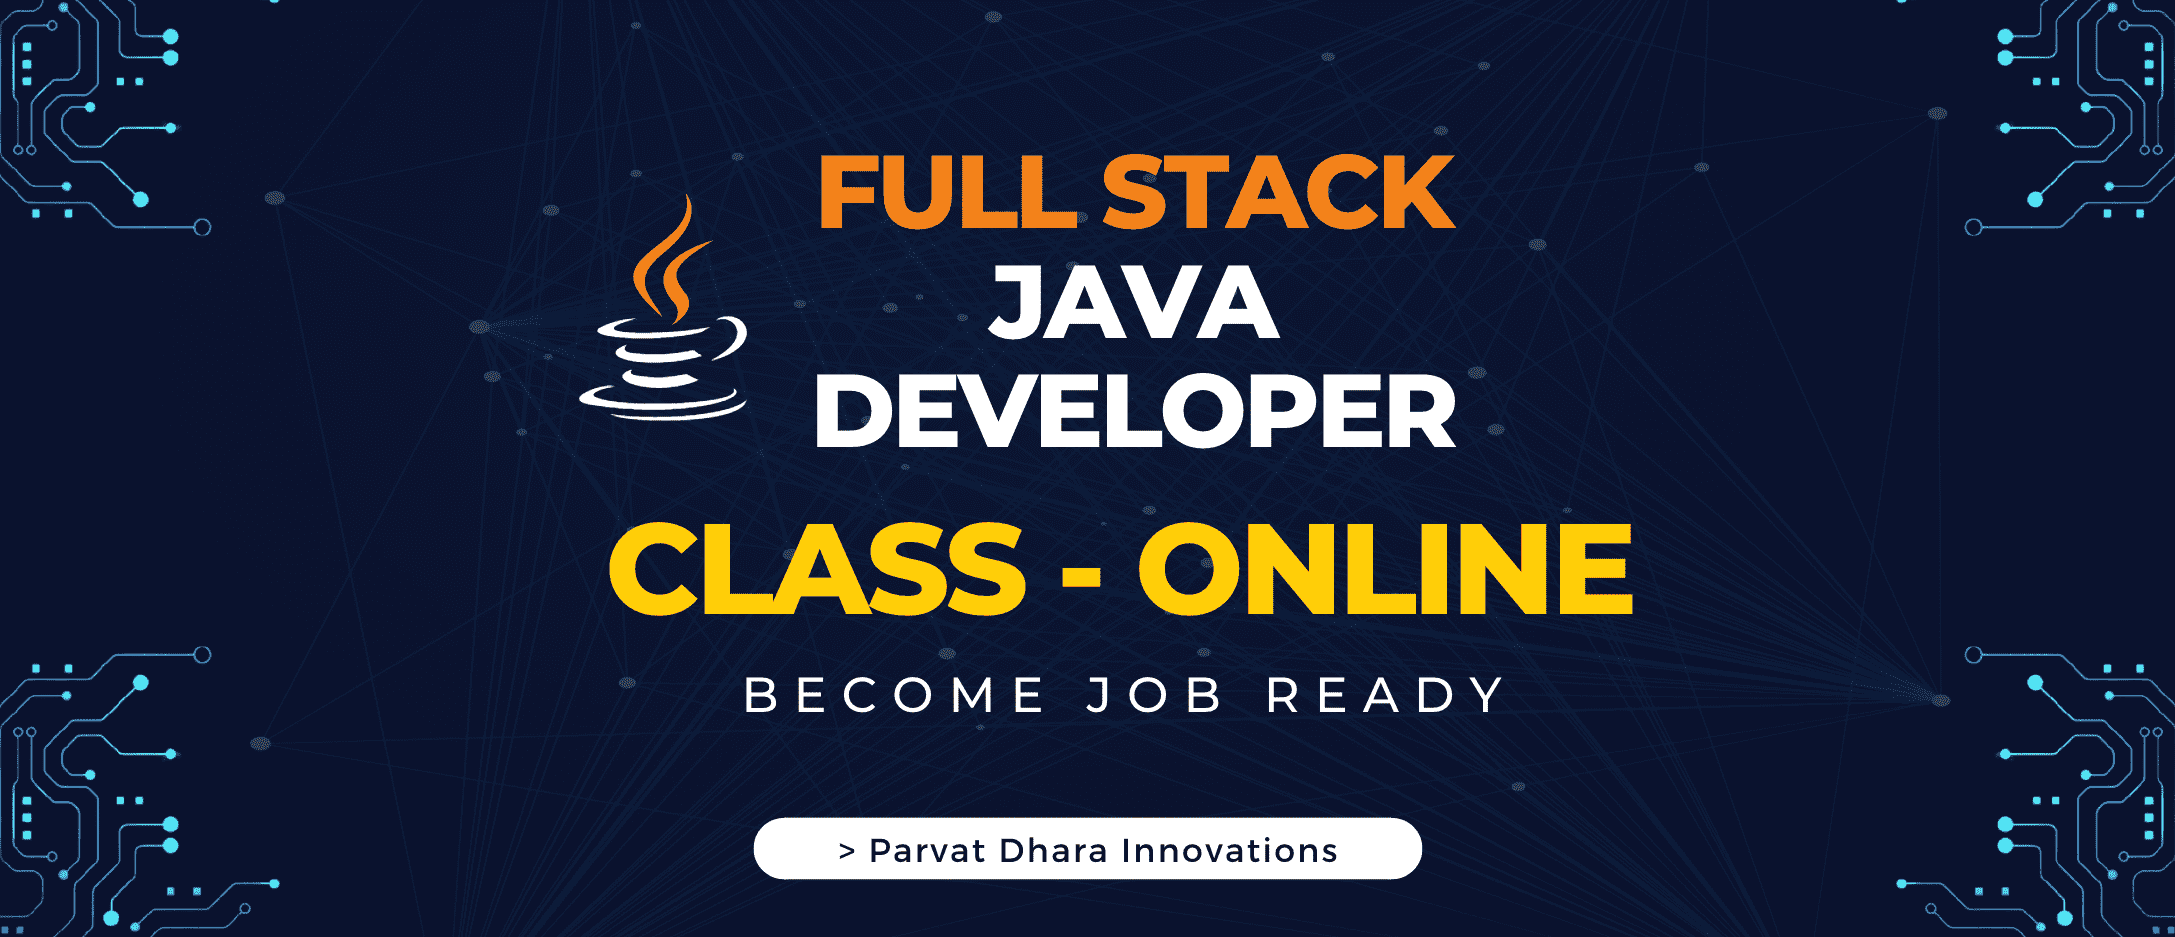 banner saying full stack java developer class online